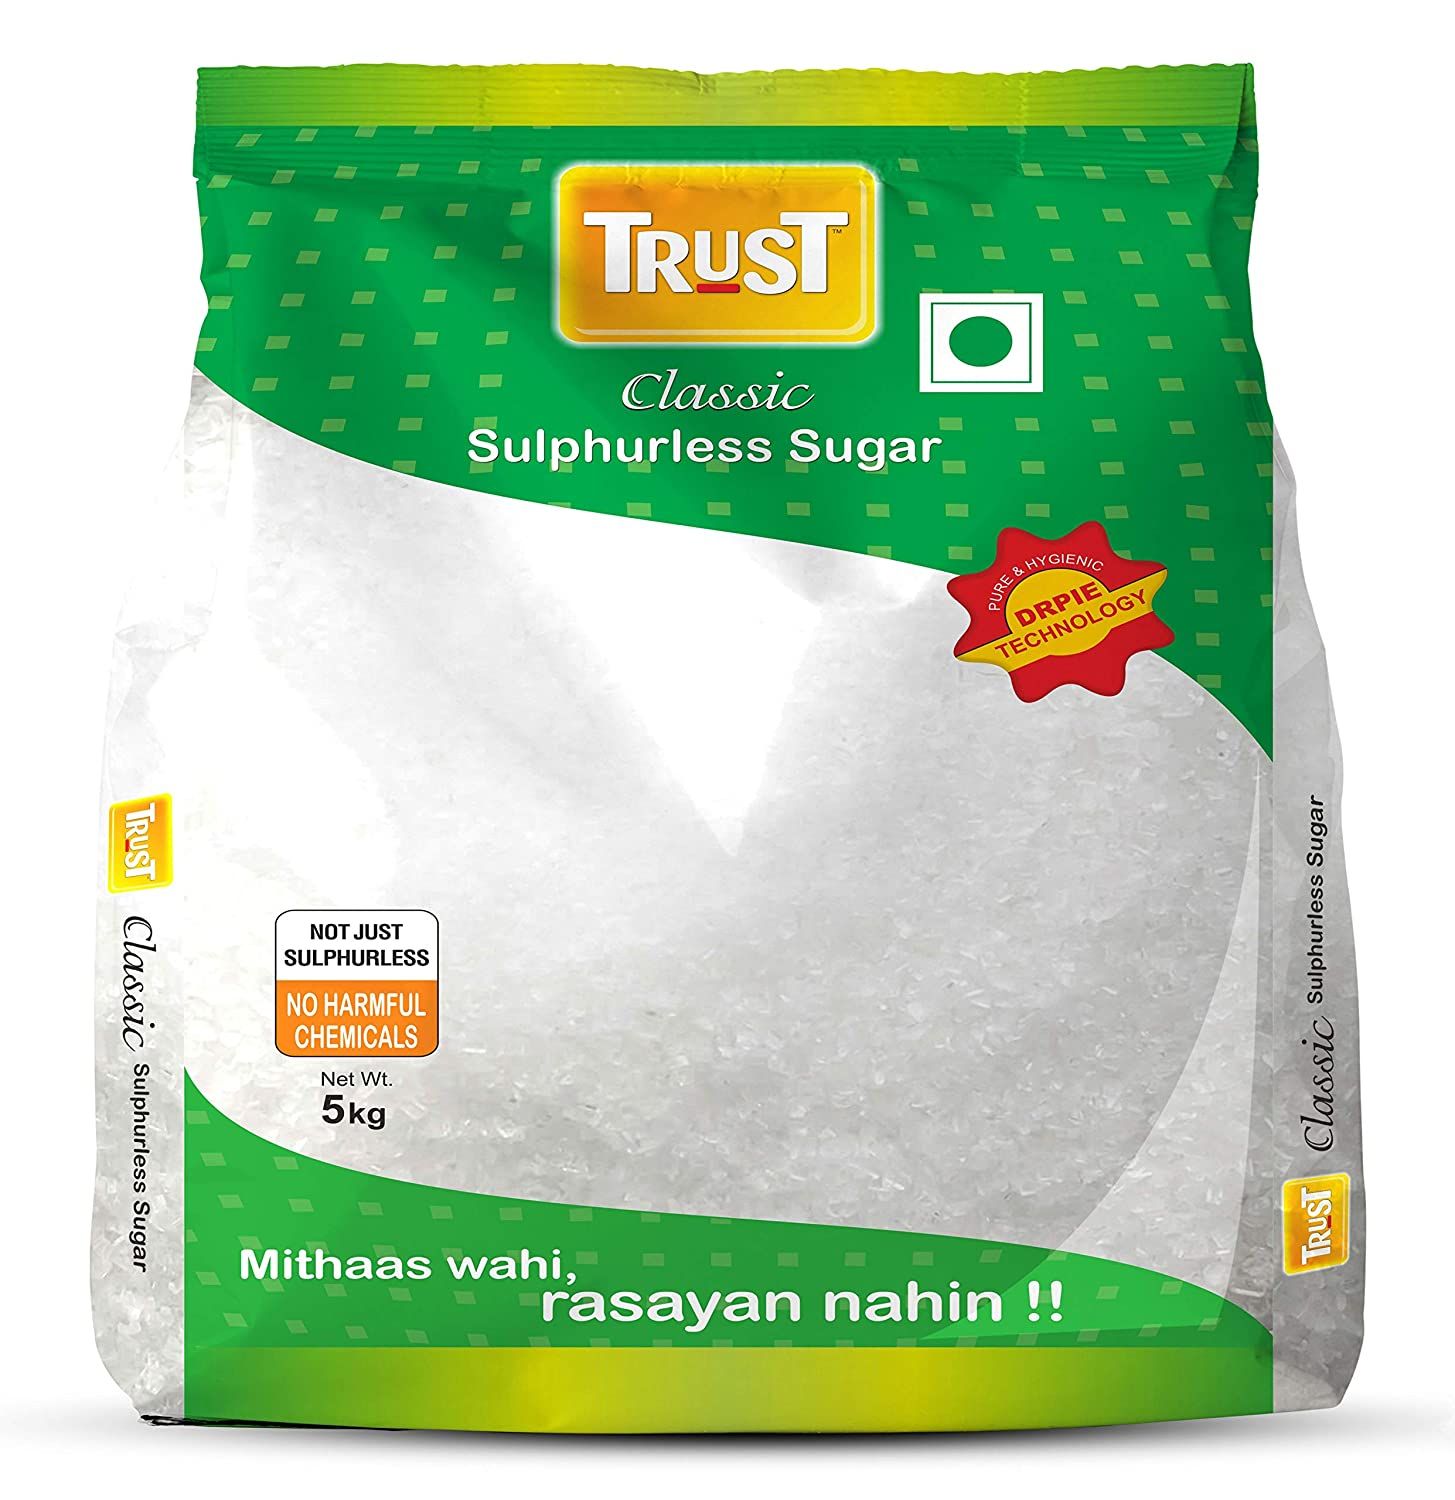 Trust Classic Sulphur less Refined Sugar Image